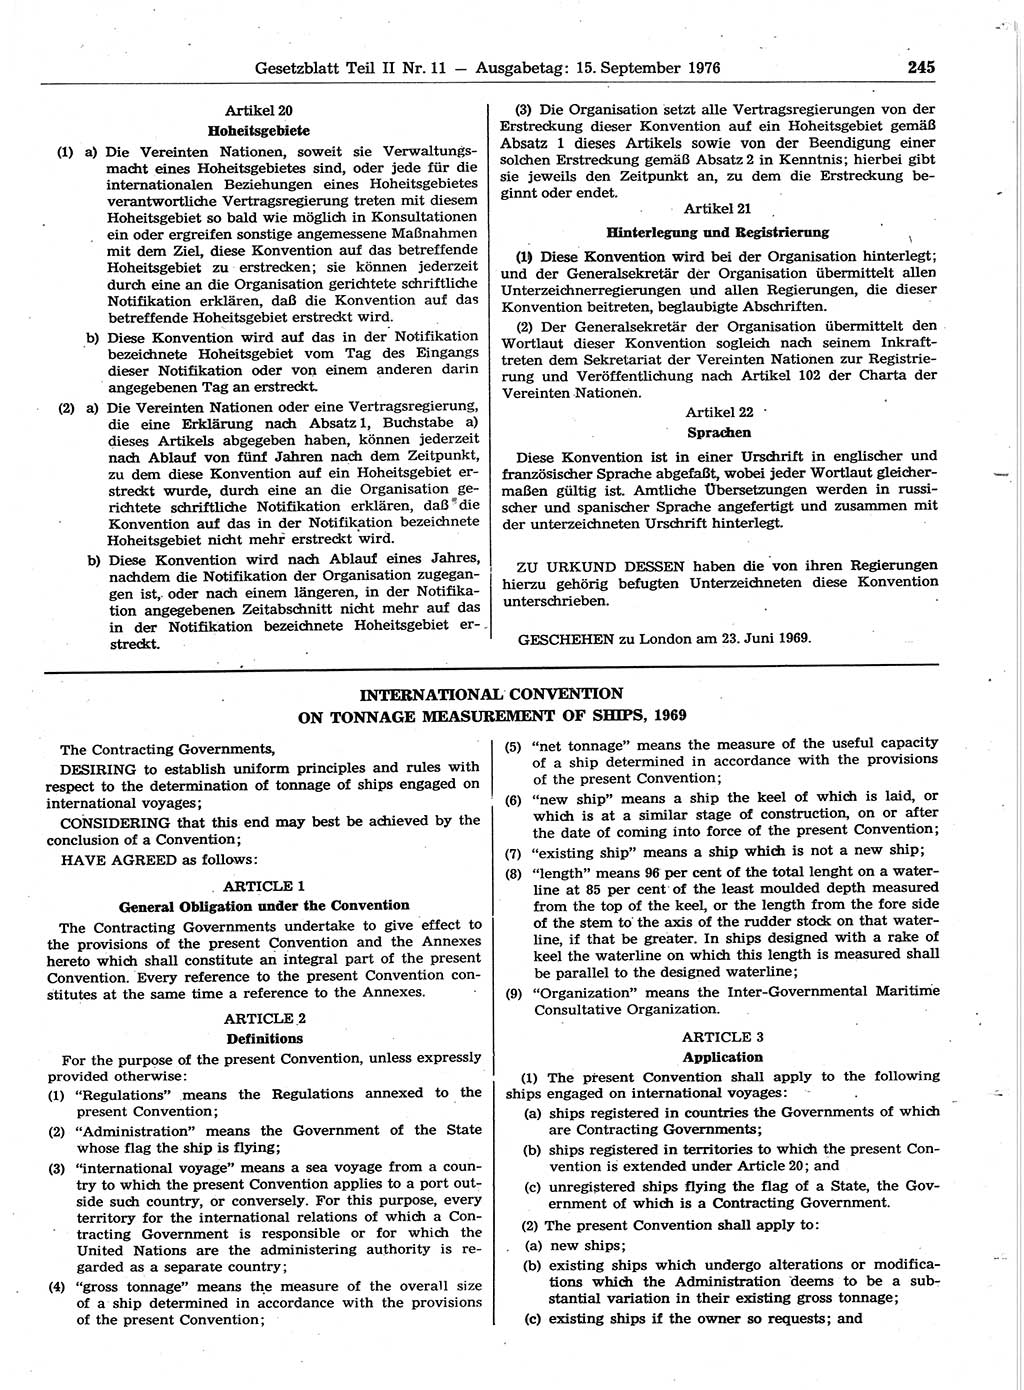 Gesetzblatt (GBl.) der Deutschen Demokratischen Republik (DDR) Teil ⅠⅠ 1976, Seite 245 (GBl. DDR ⅠⅠ 1976, S. 245)